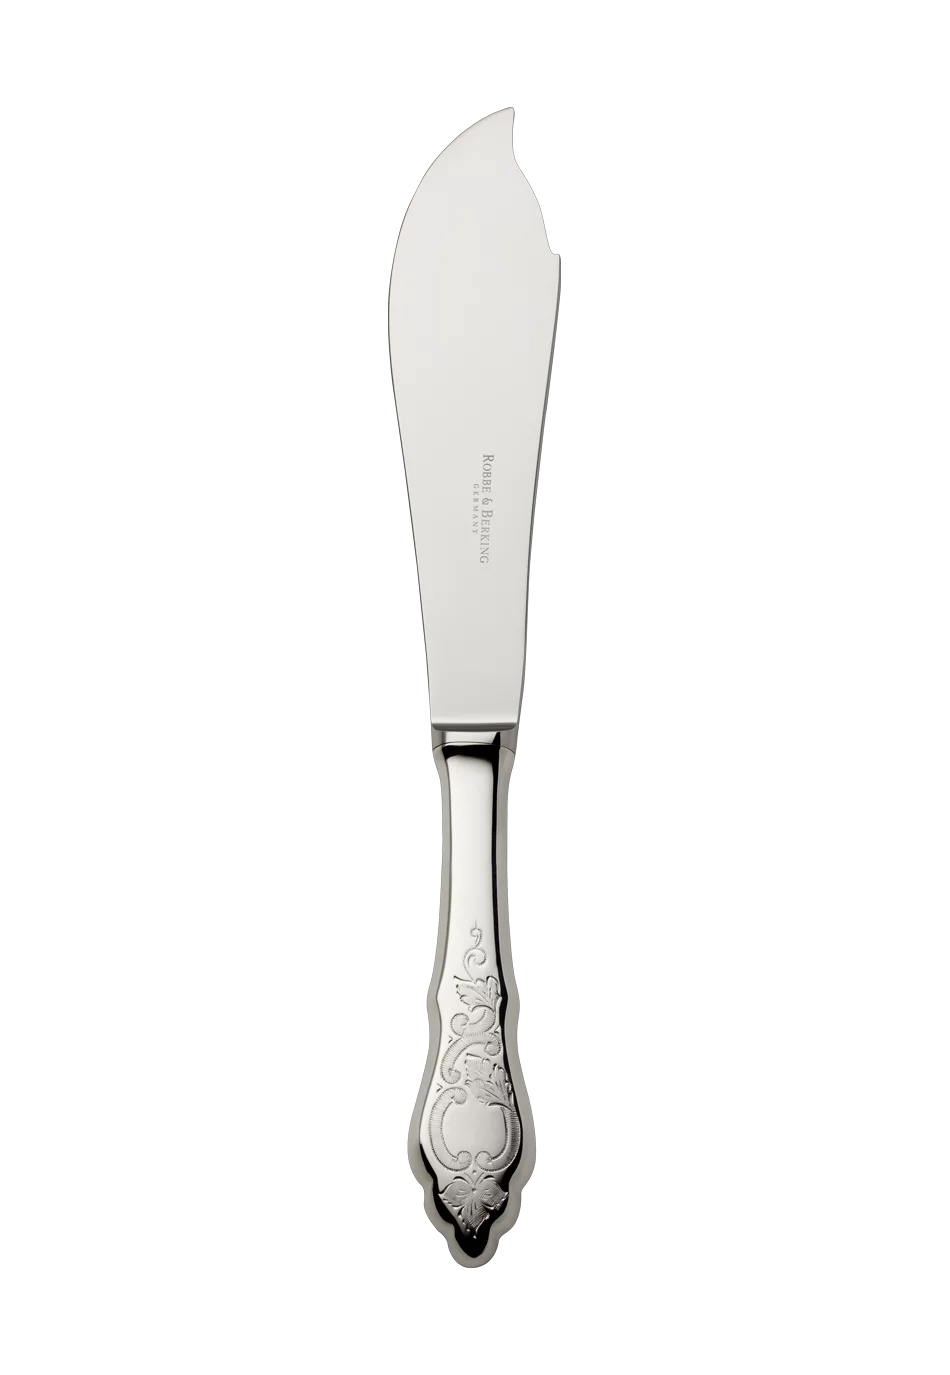 Ostfriesen Tart Knife (18/8 stainless steel)